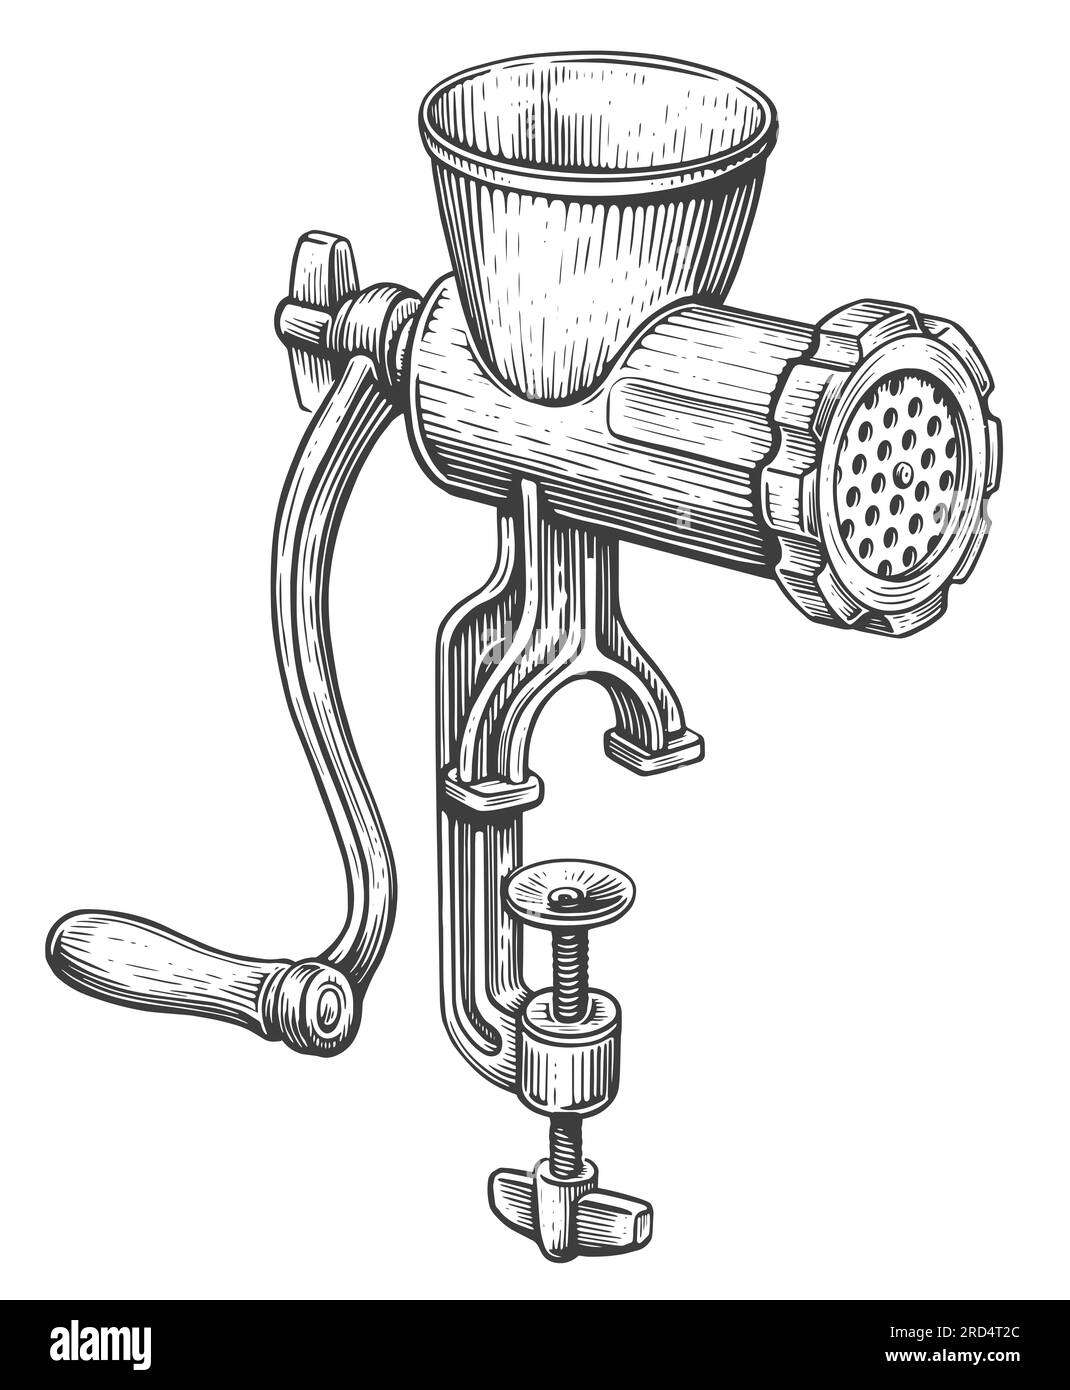 Retro kitchen grinder sketch illustration. Vintage manual meat mincer with handle Stock Photo